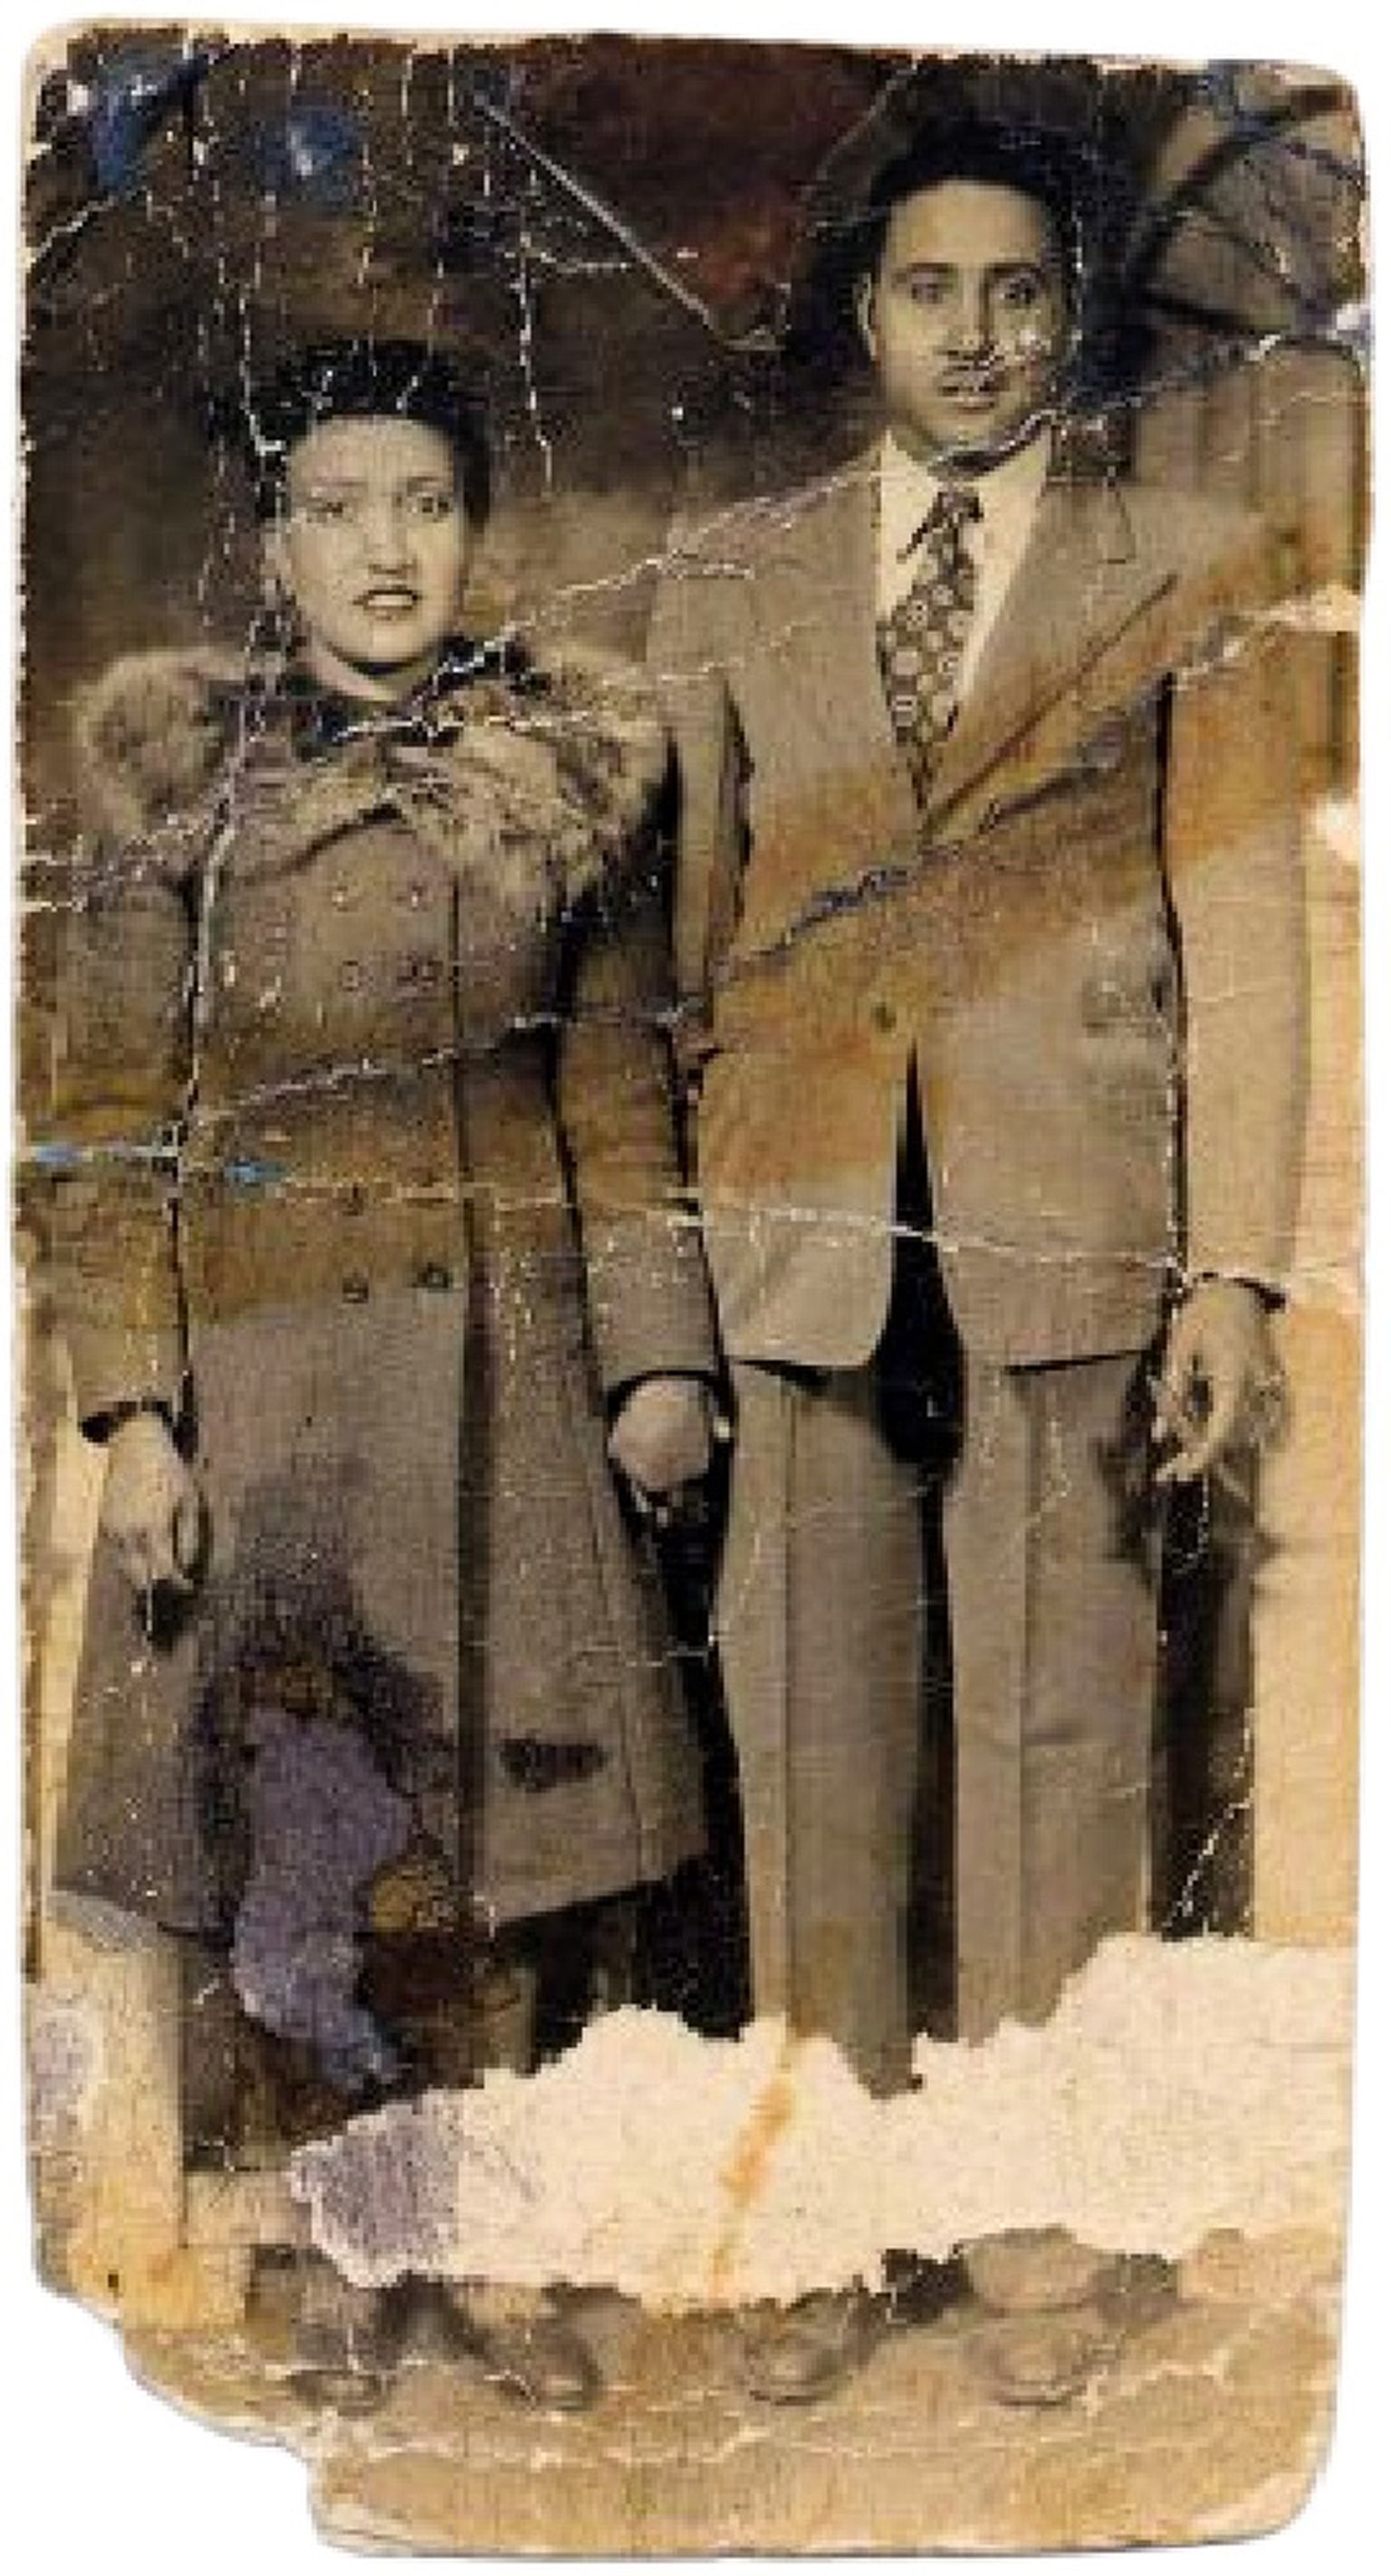 Генриетта Лакс с мужем Дэвидом Лаксом, примерно 1940 год